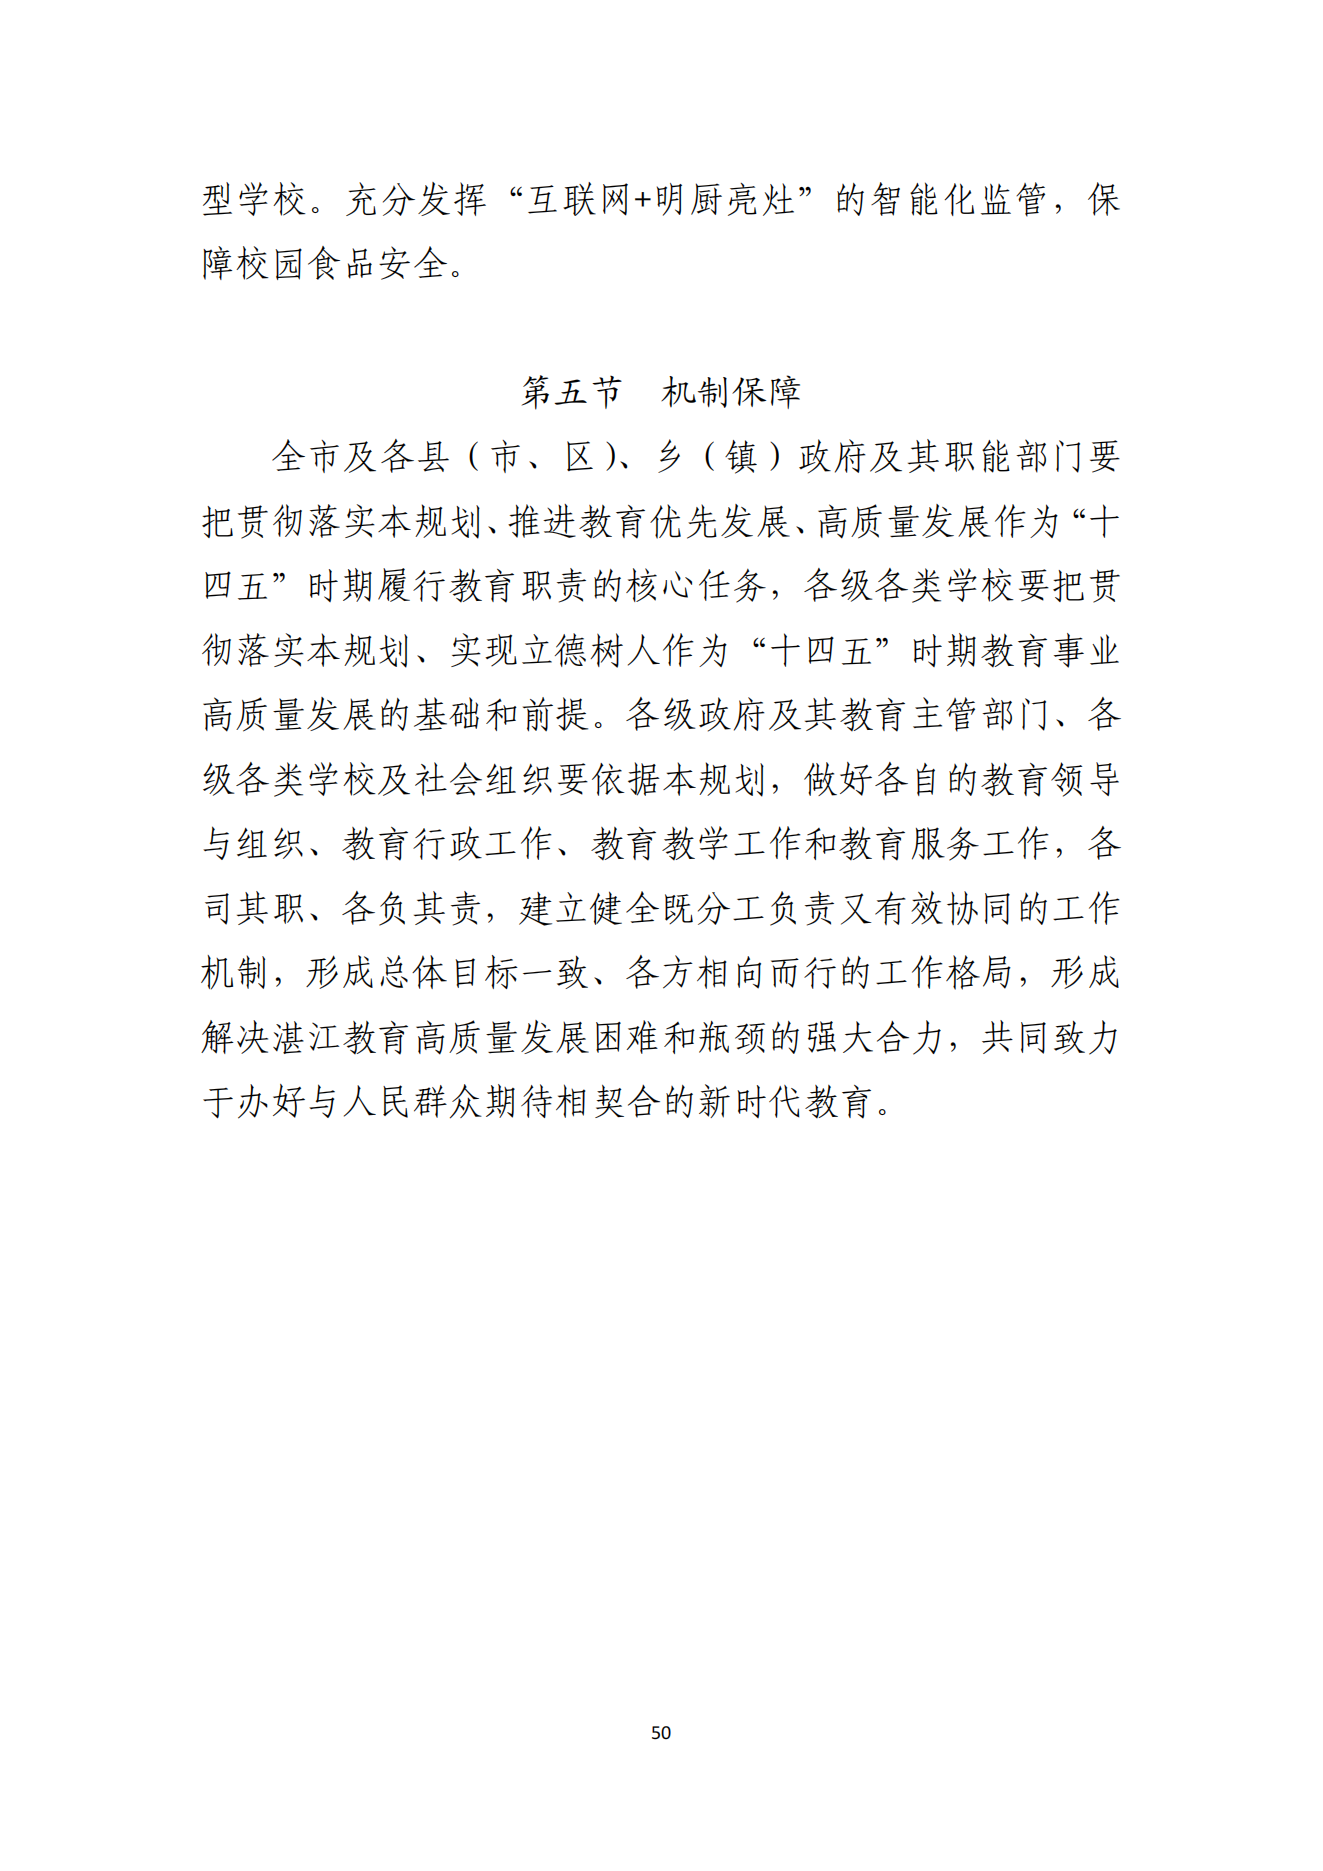 湛江市人民政府办公室关于印发湛江市教育发展“十四五”规划的通知_49.png